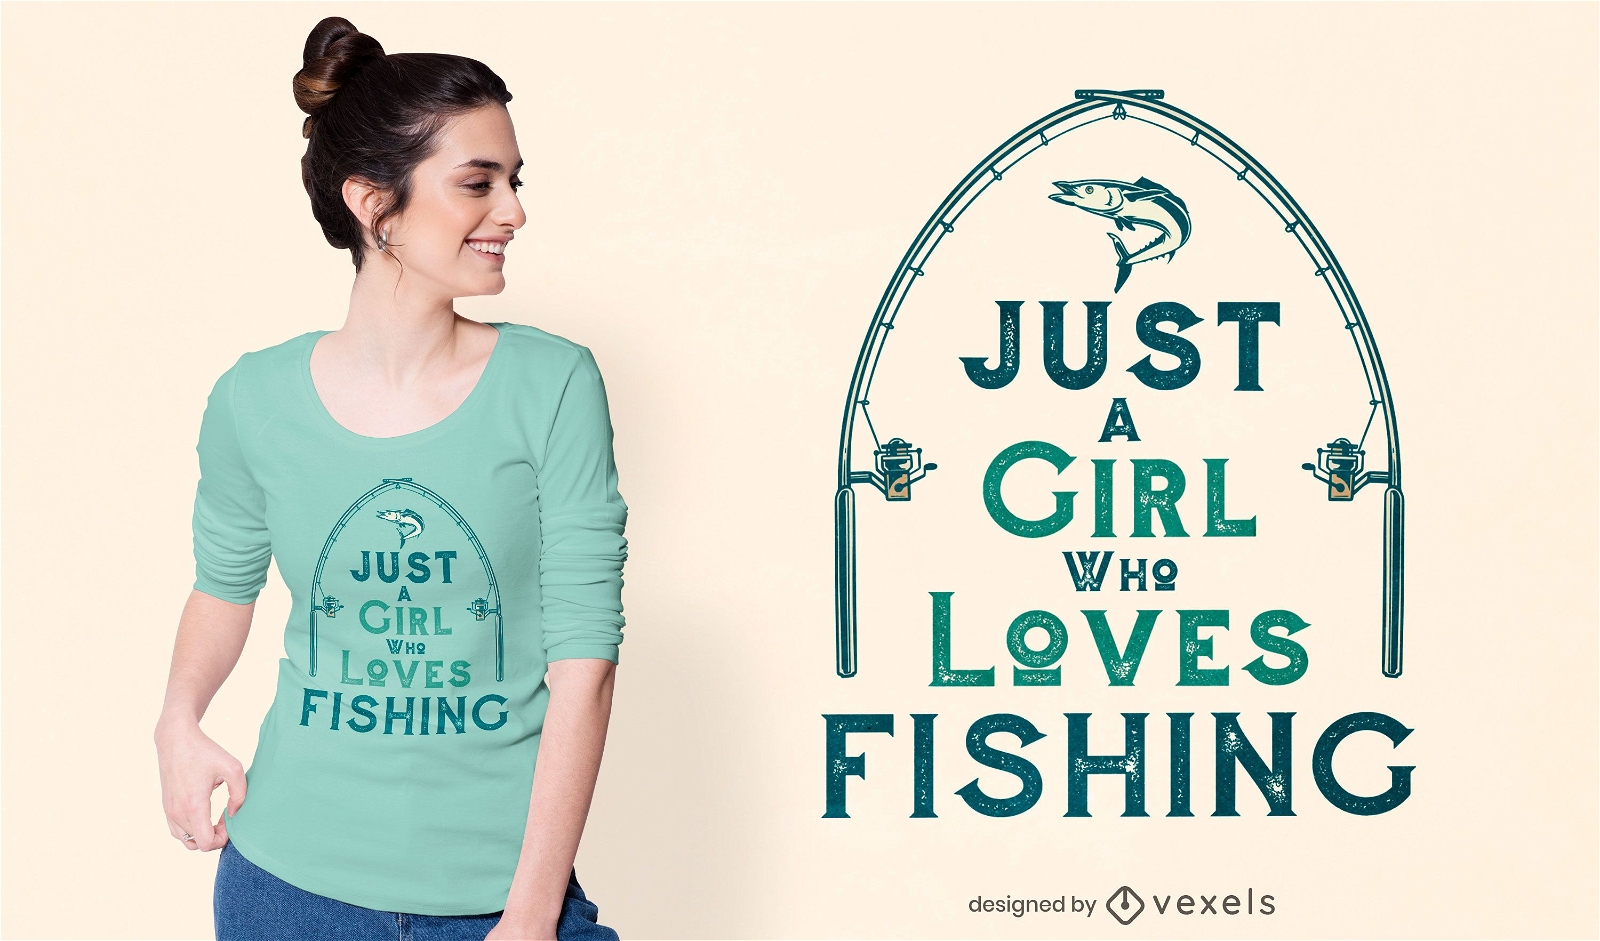 Dise?o de camiseta amante de la pesca.